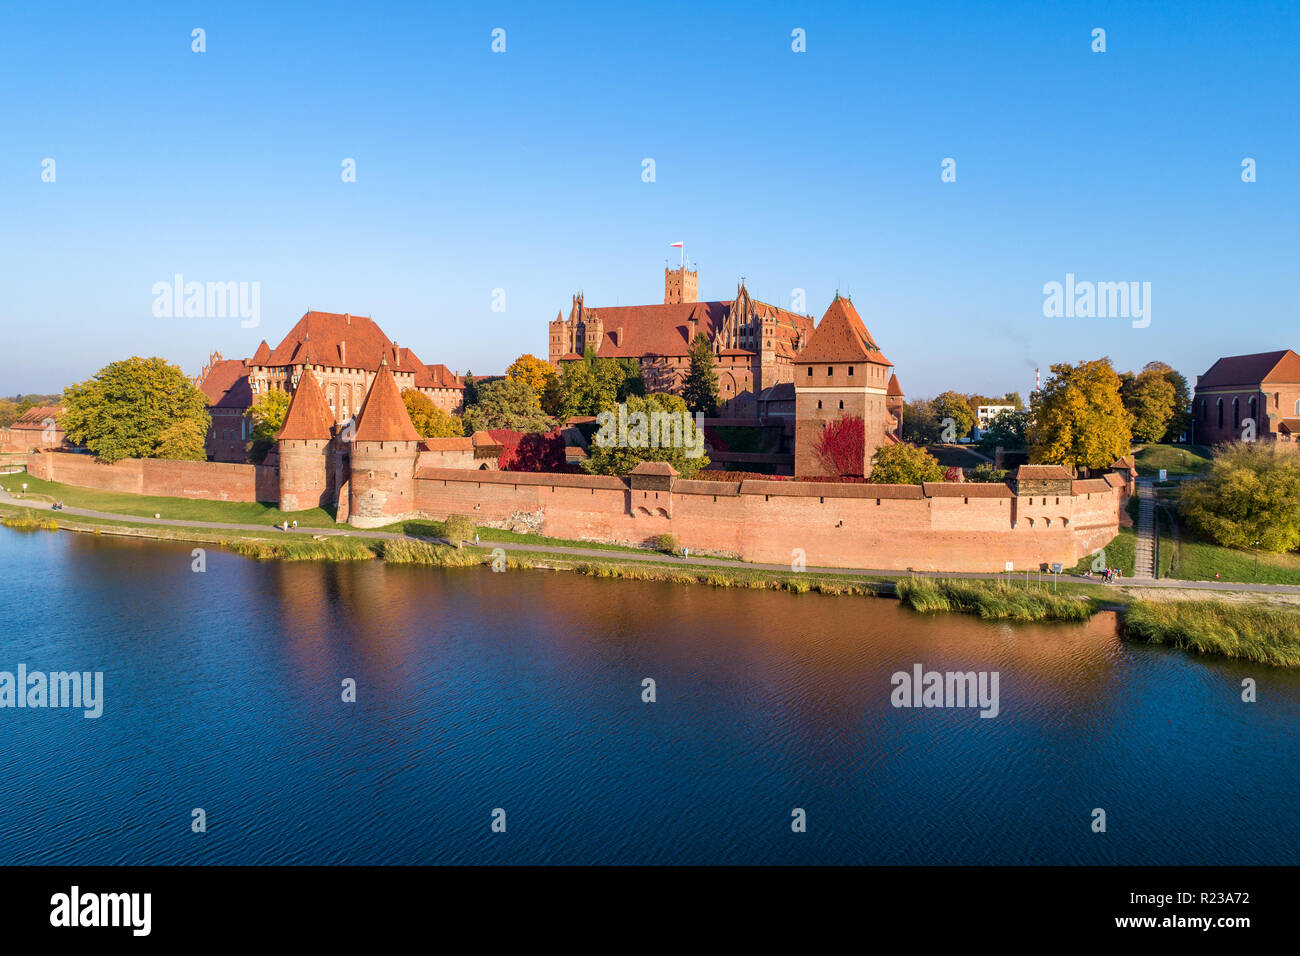 Mittelalterliche Burg Malbork (Marienburg) in Polen, die Festung des Deutschen Ordens auf dem Fluß Nogat. Luftaufnahme im Herbst im Abendlicht. Stockfoto